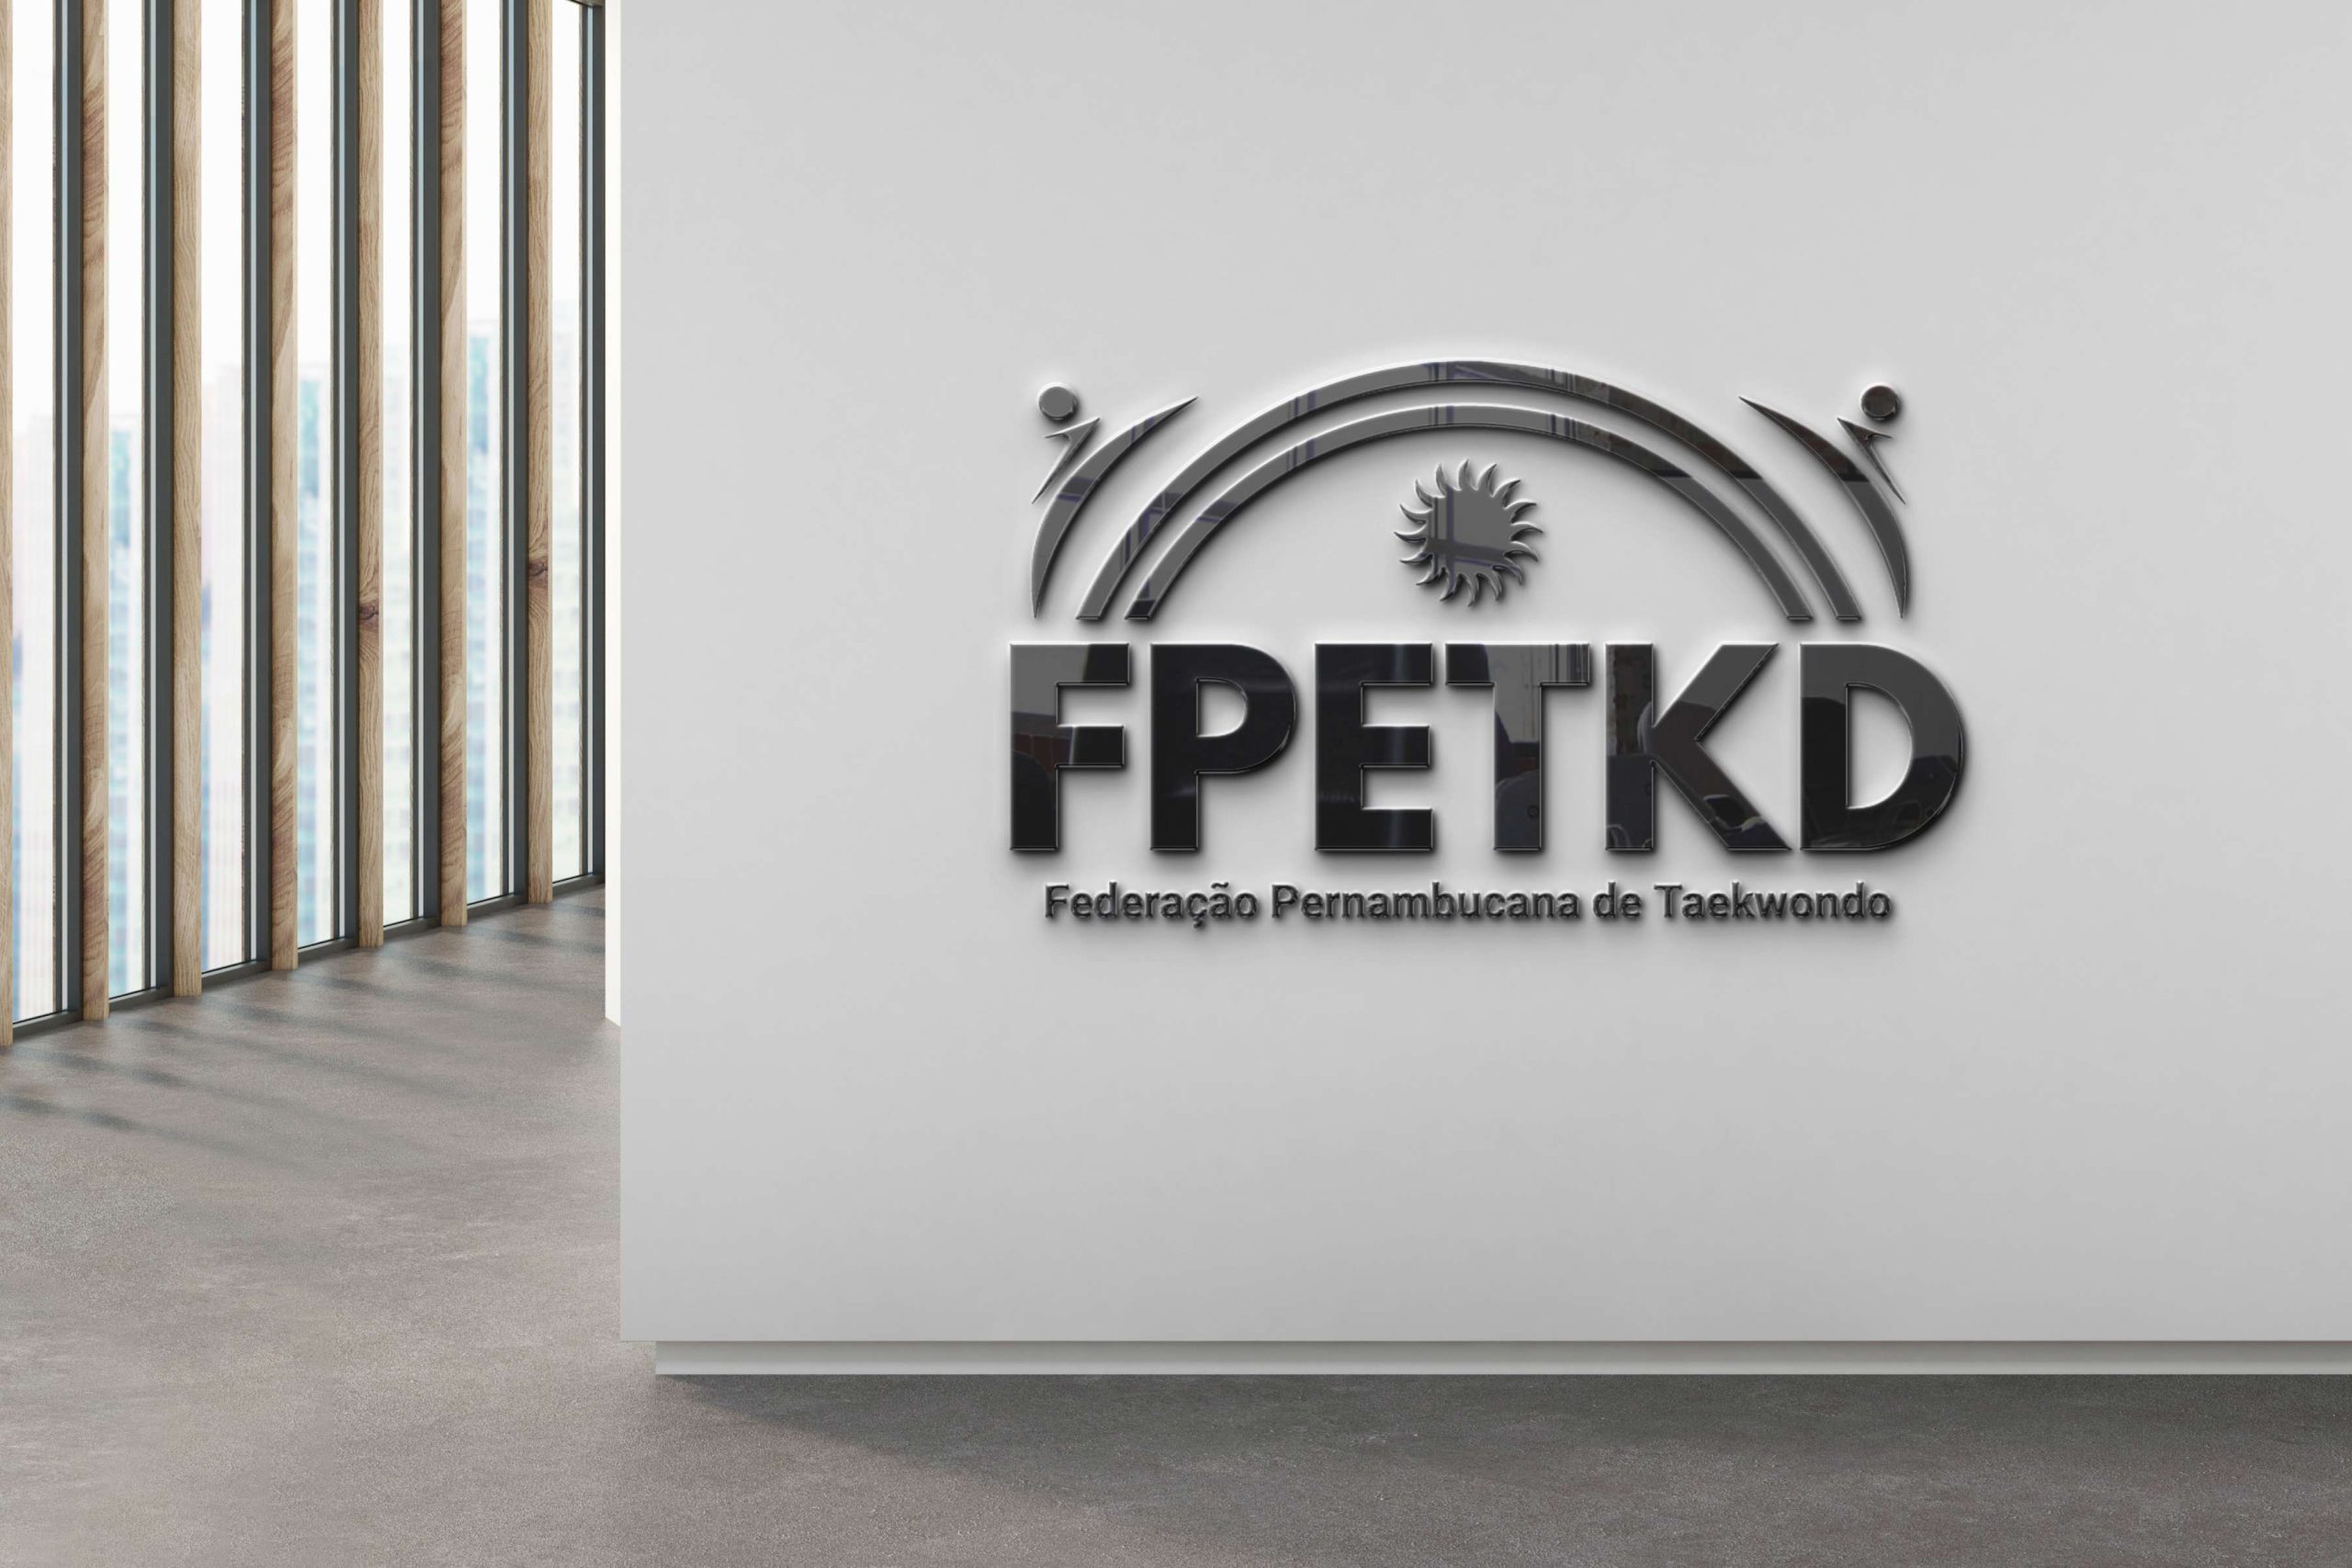 Federação Pernambucana de Taekwondo FPETKD